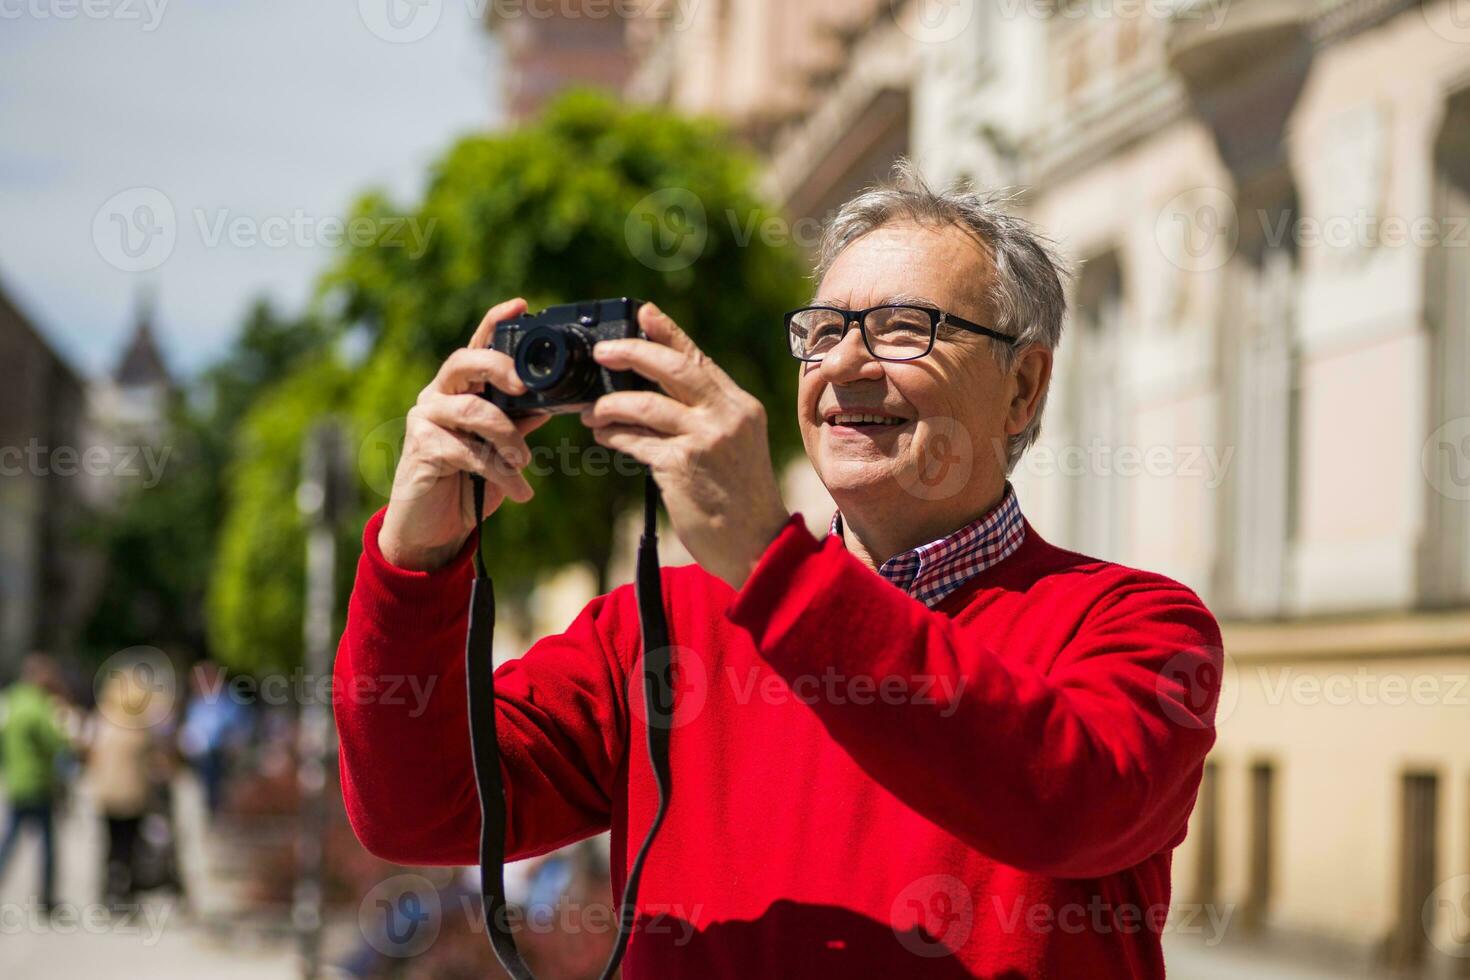 mayor hombre turista disfruta fotografiando a el ciudad foto